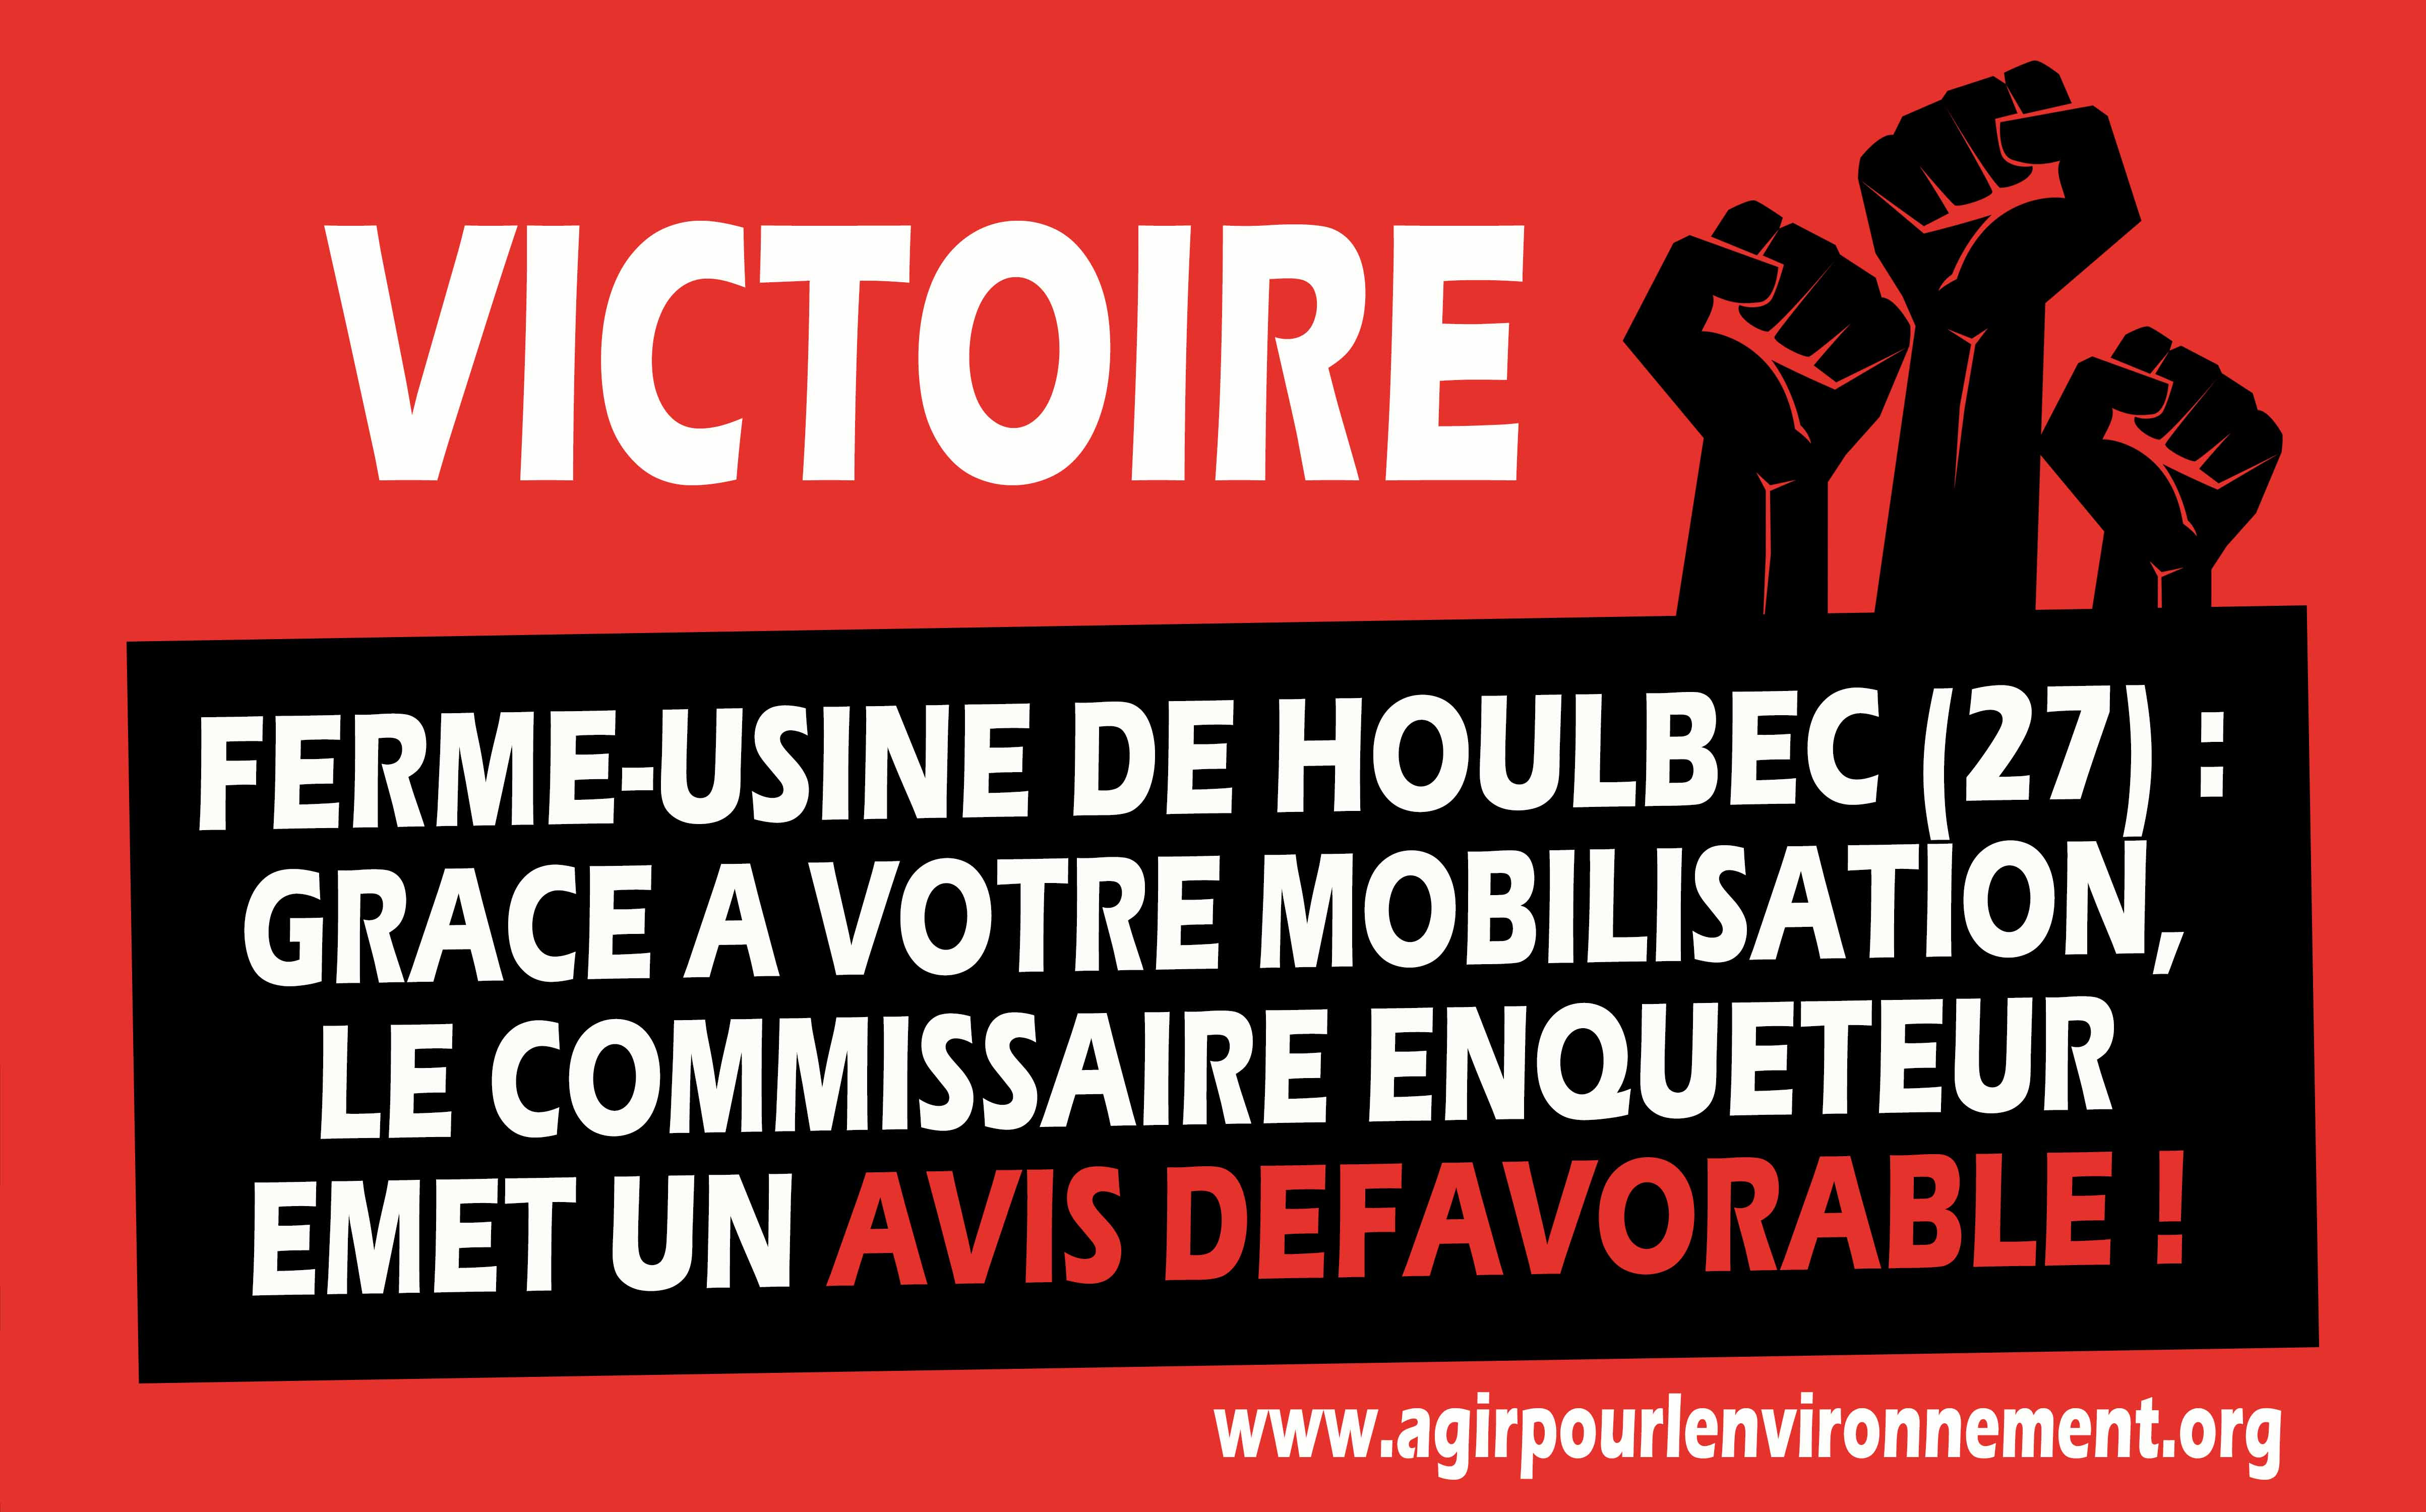 Ferme-usine de Houlbec : Une pétition, une mobilisation locale et une première victoire !